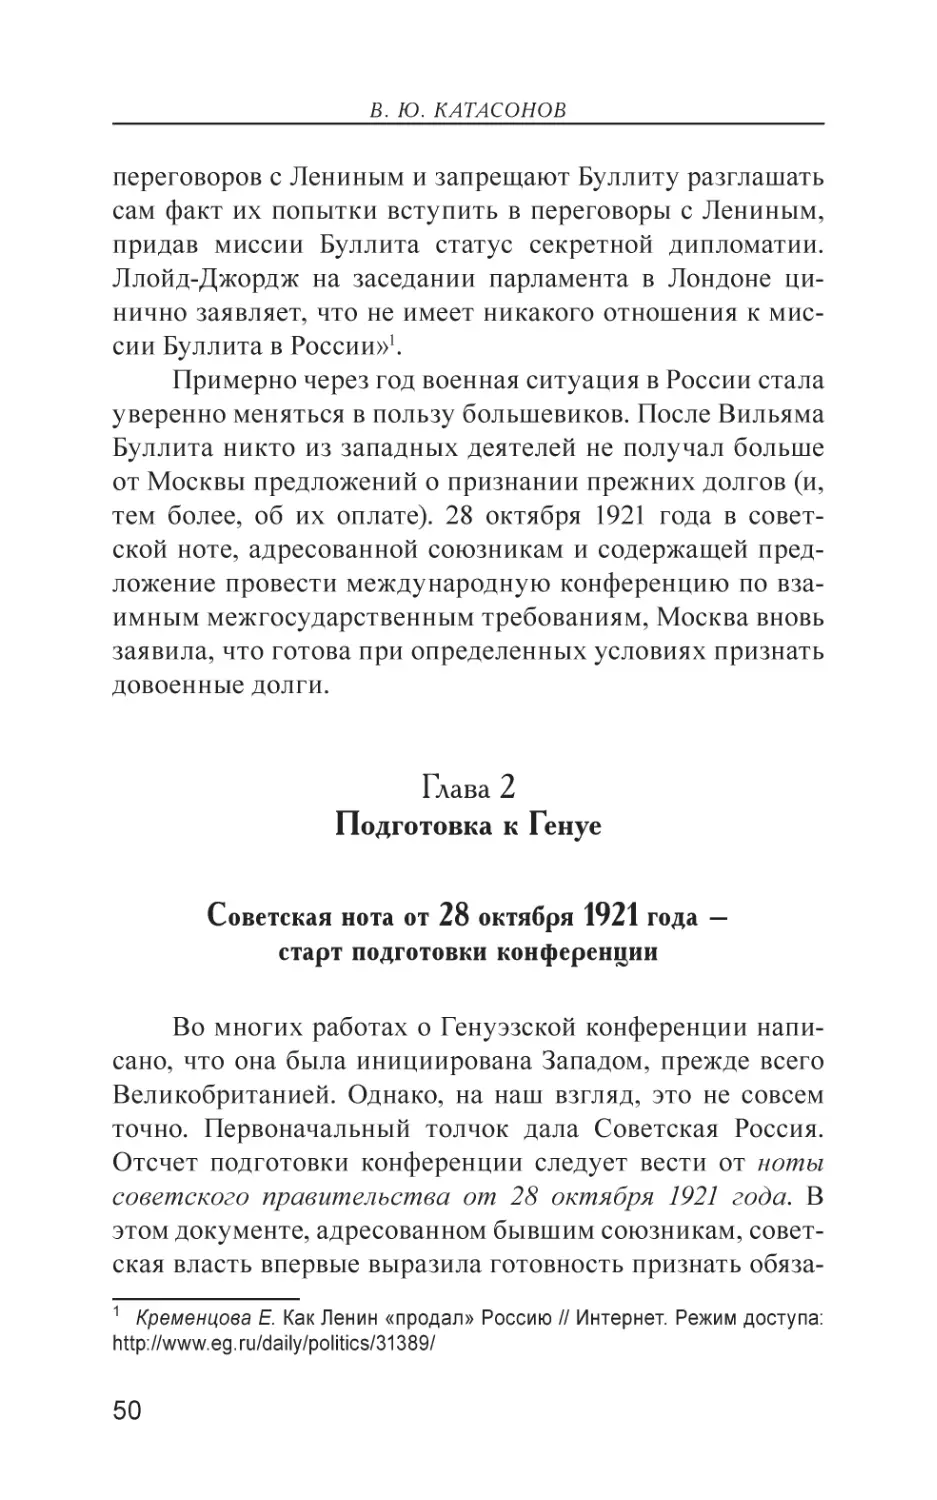 Глава 2. Подготовка к Генуе
Советская нота от 28 октября 1921 года – старт подготовки конференции